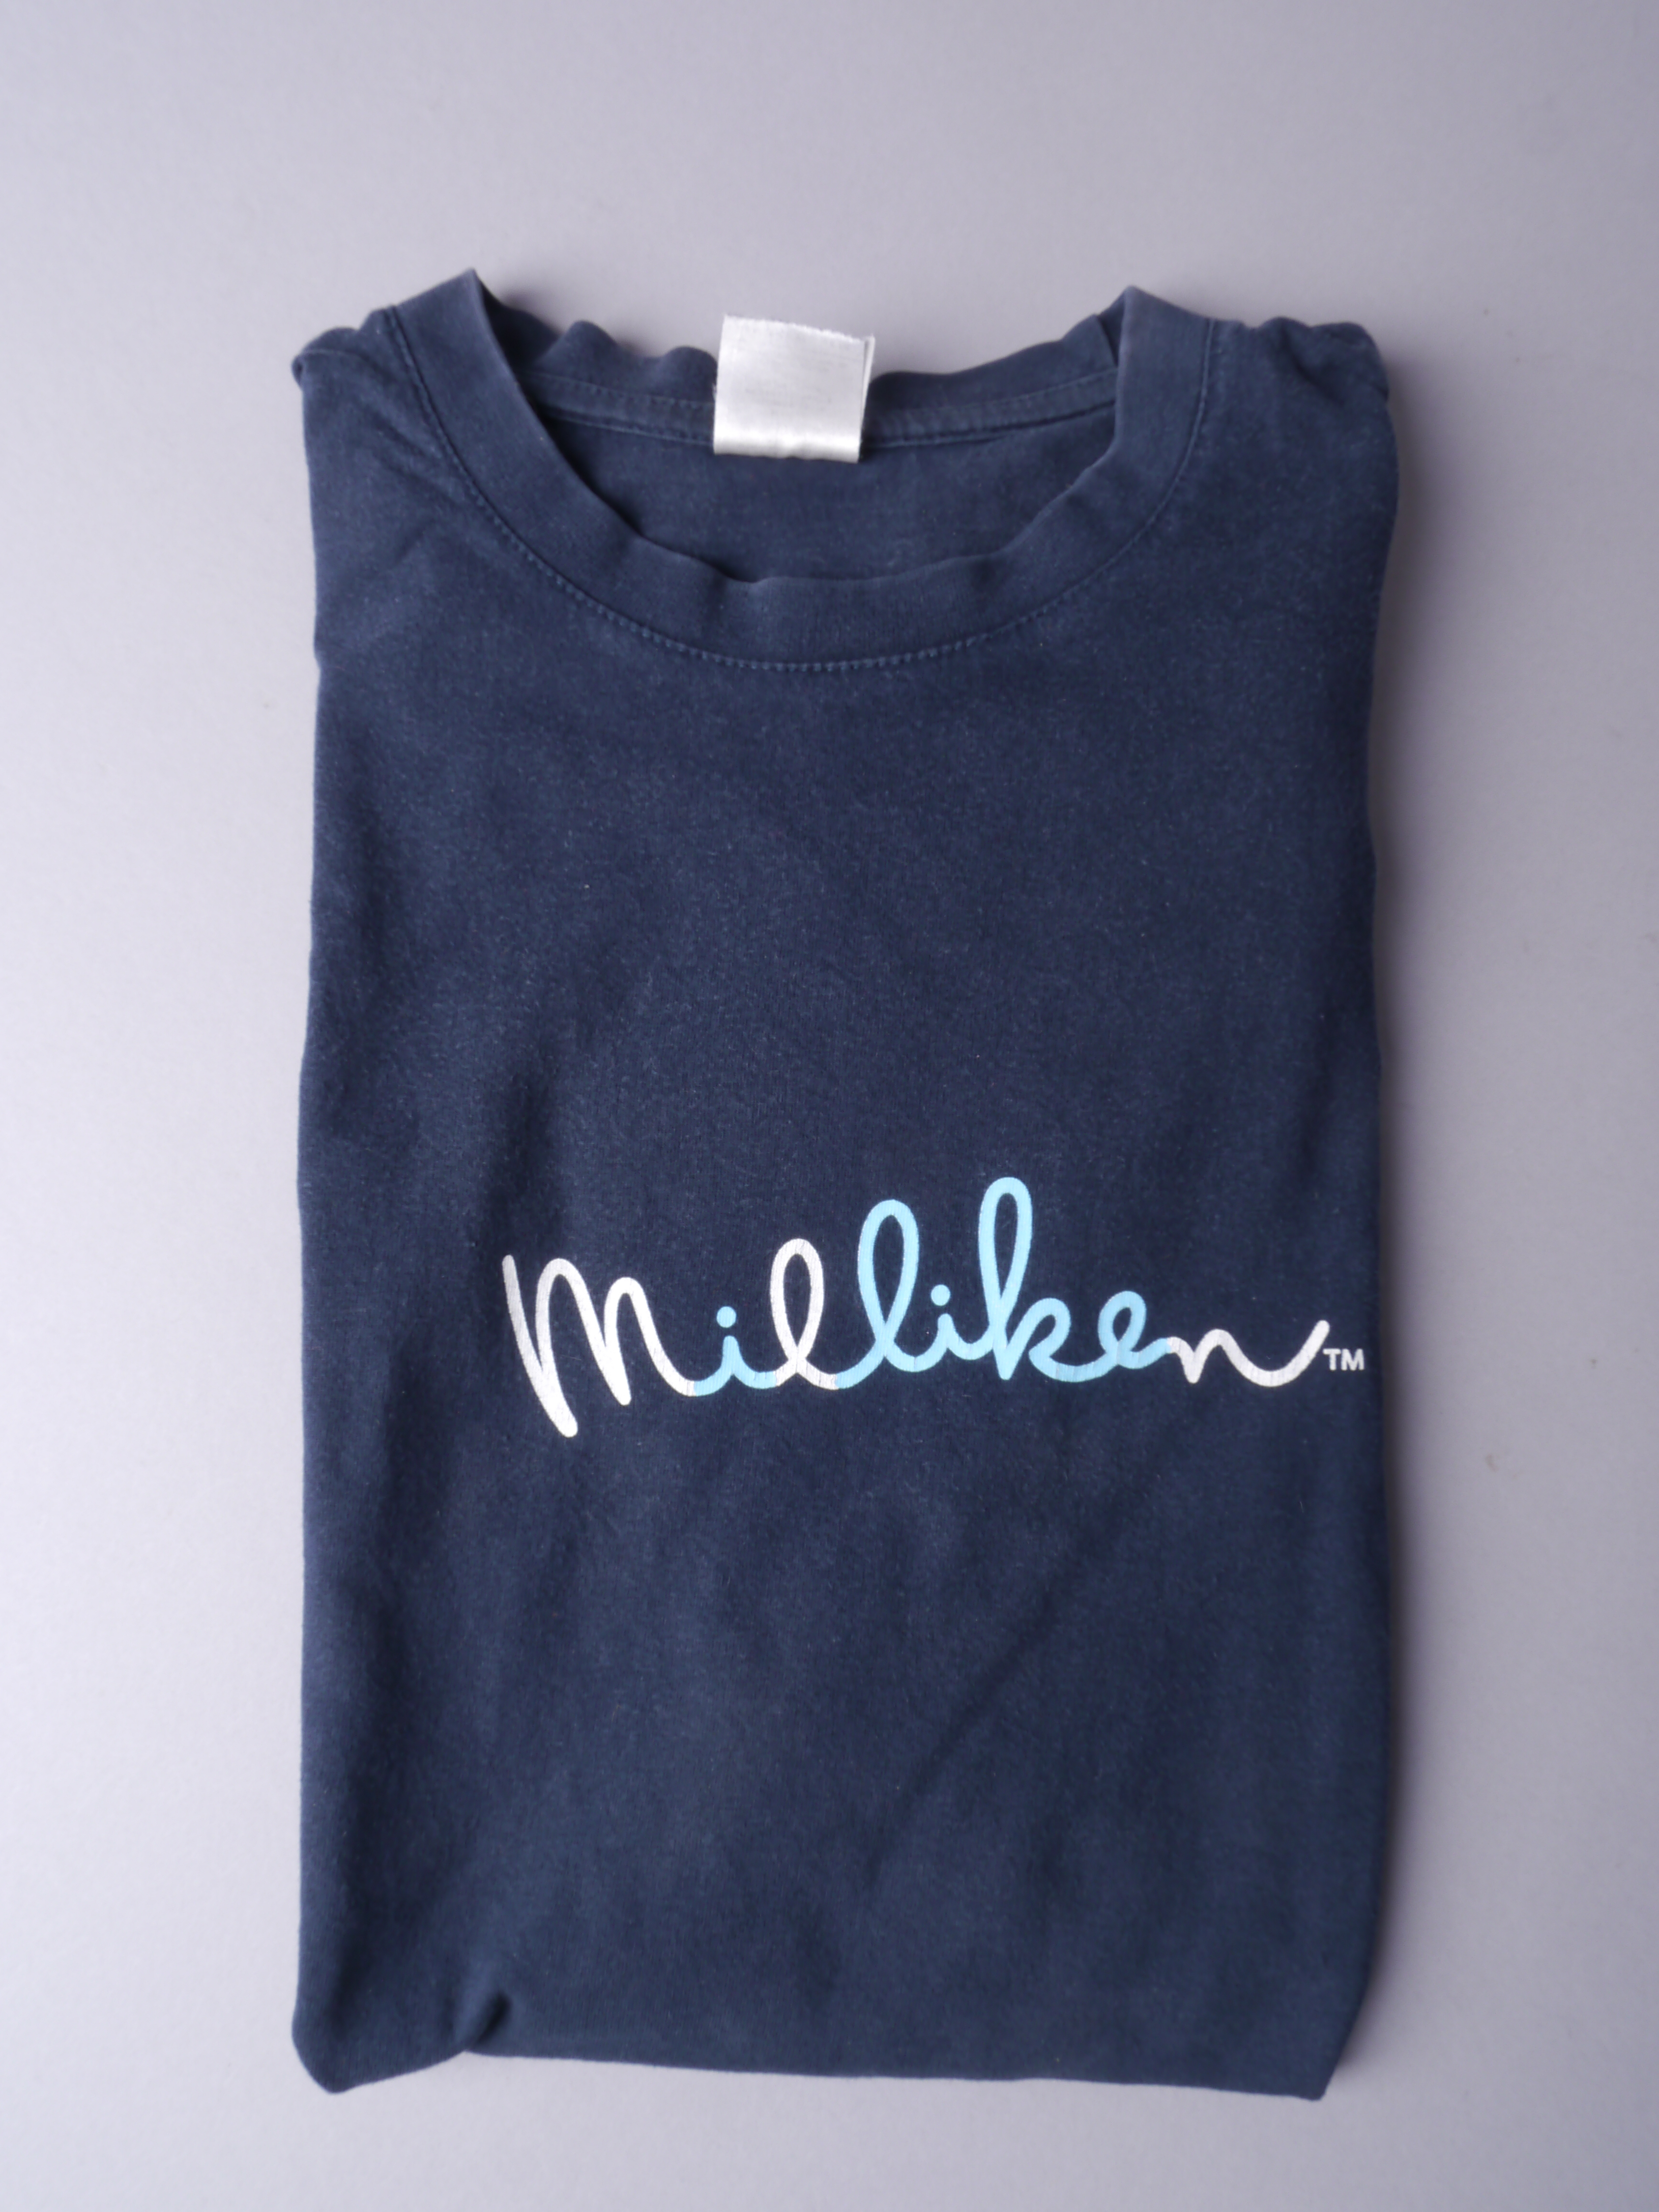 T-shirt gebruikt als werkkleding bij Milliken Europe